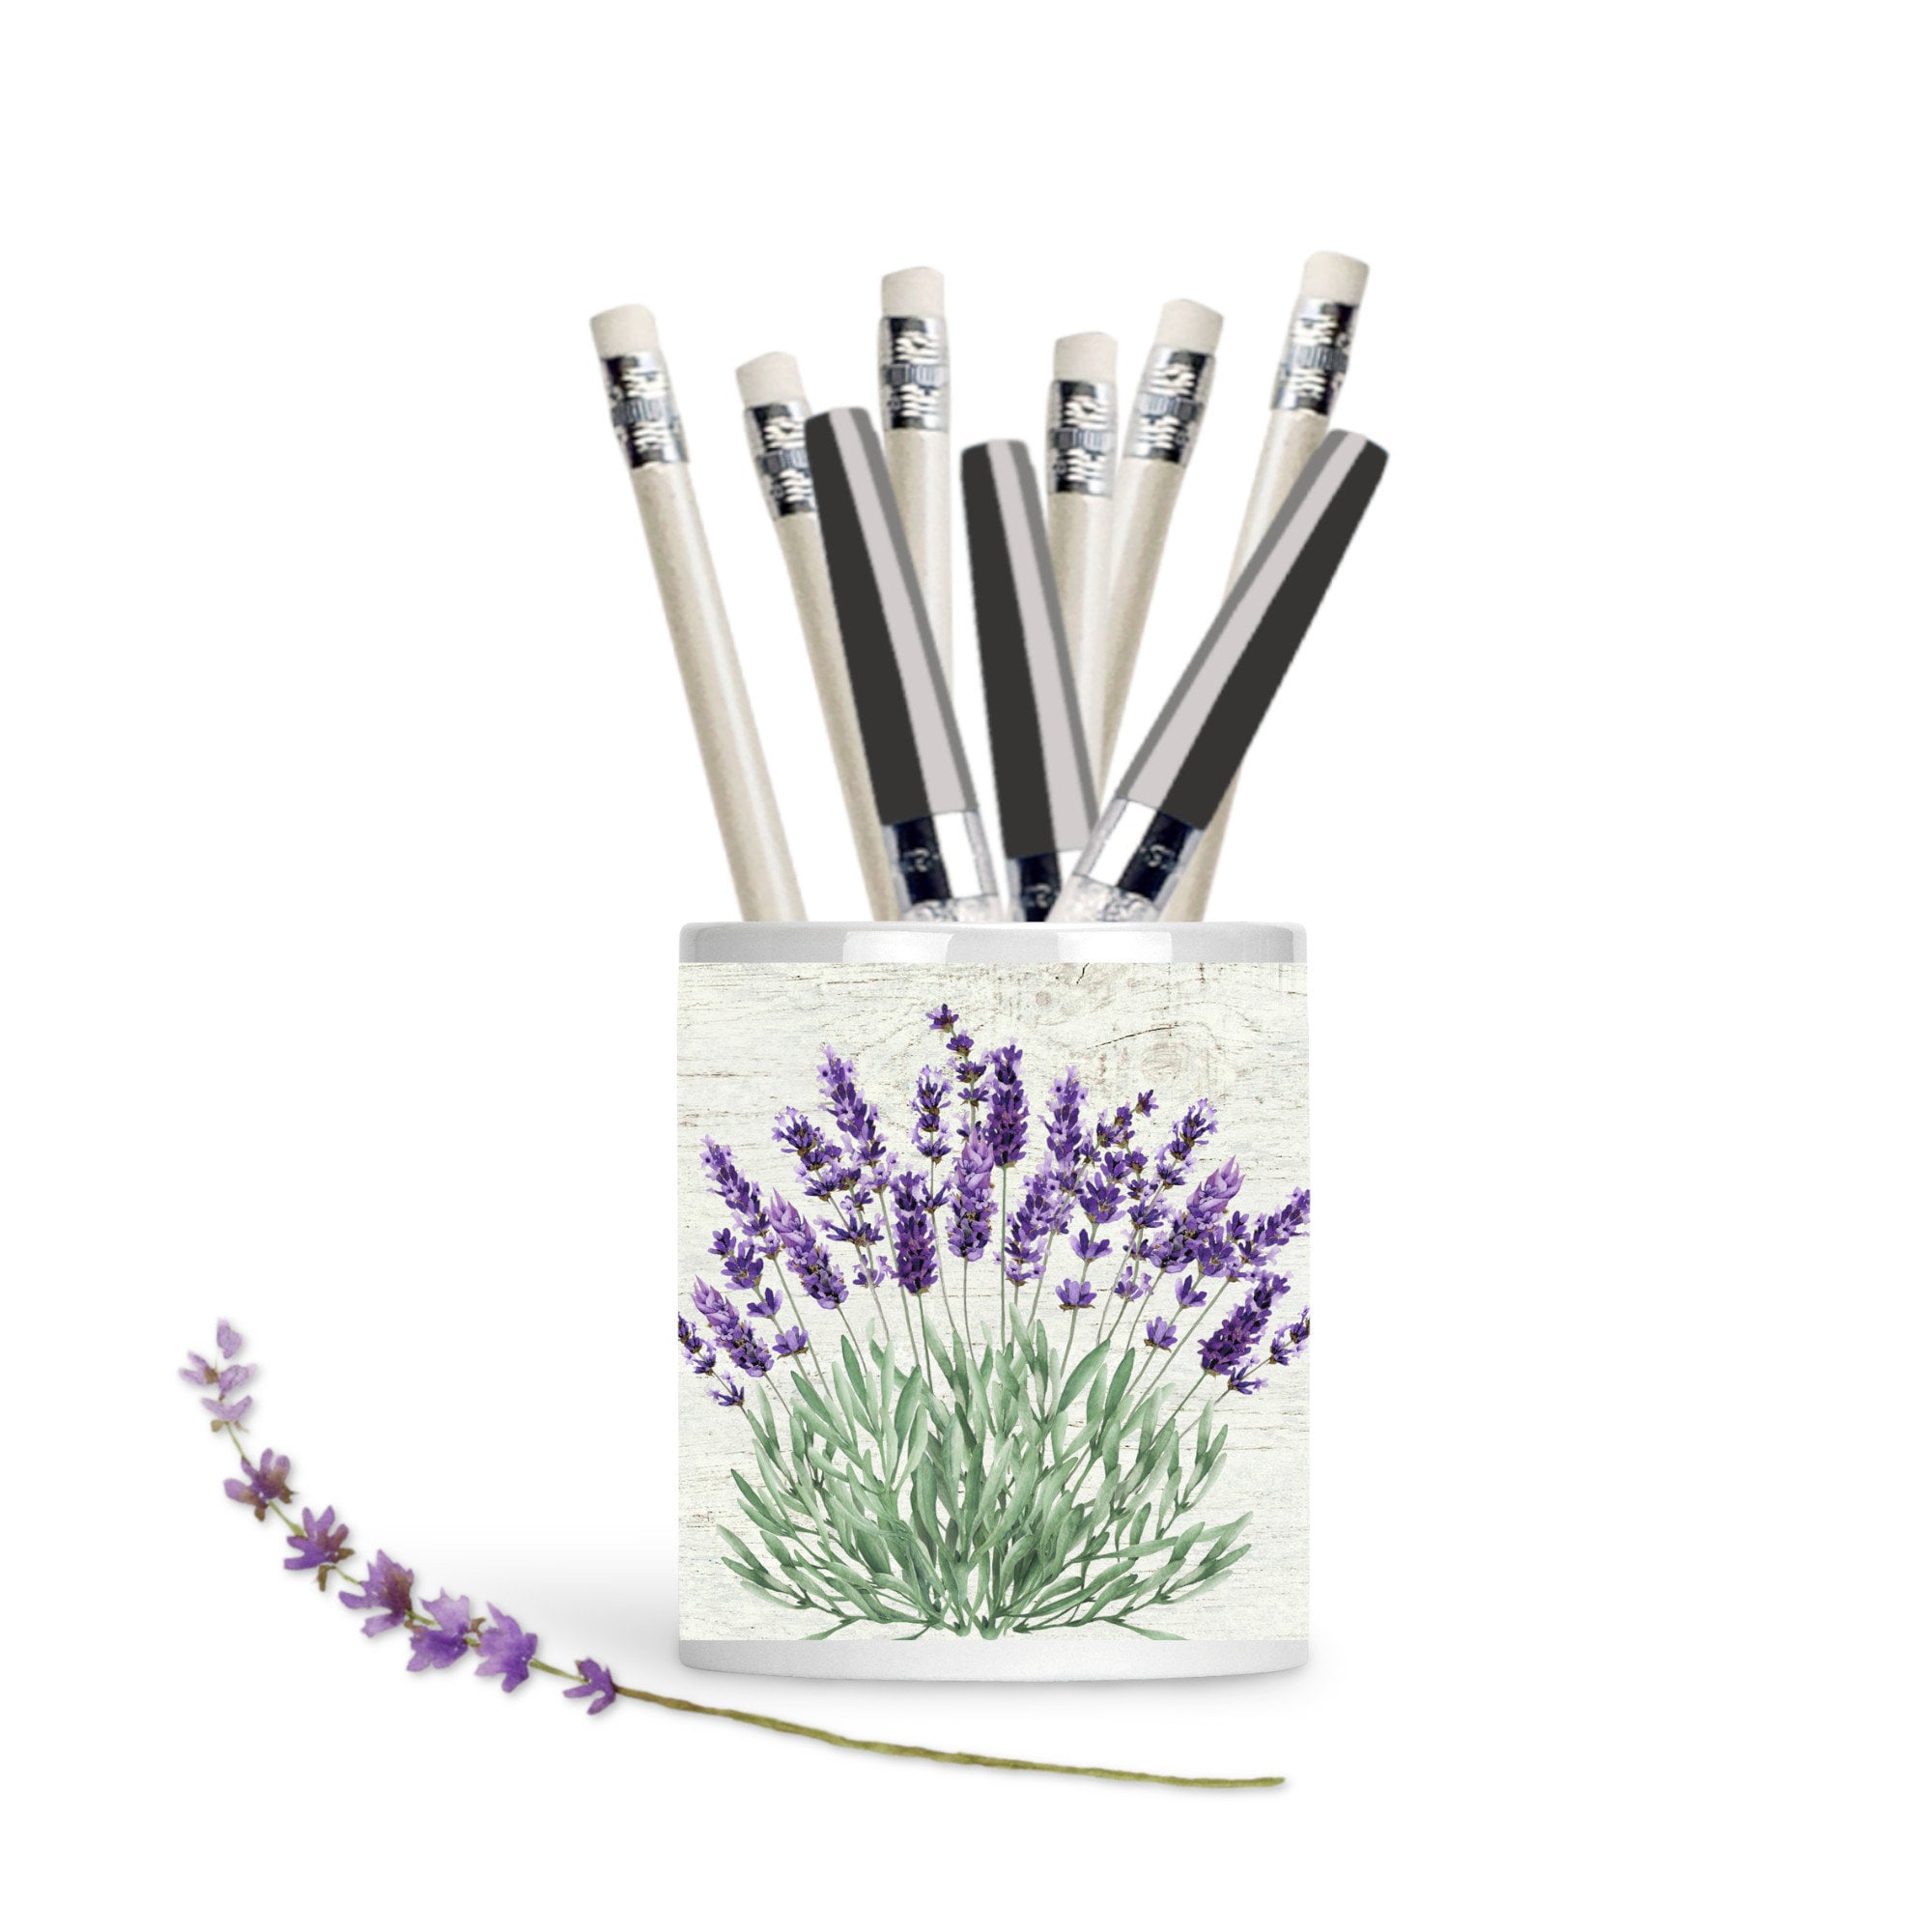 Flower Inspired Pen/Brush/Utensil Holder - Sapele and Beech Wood - ApolloBox